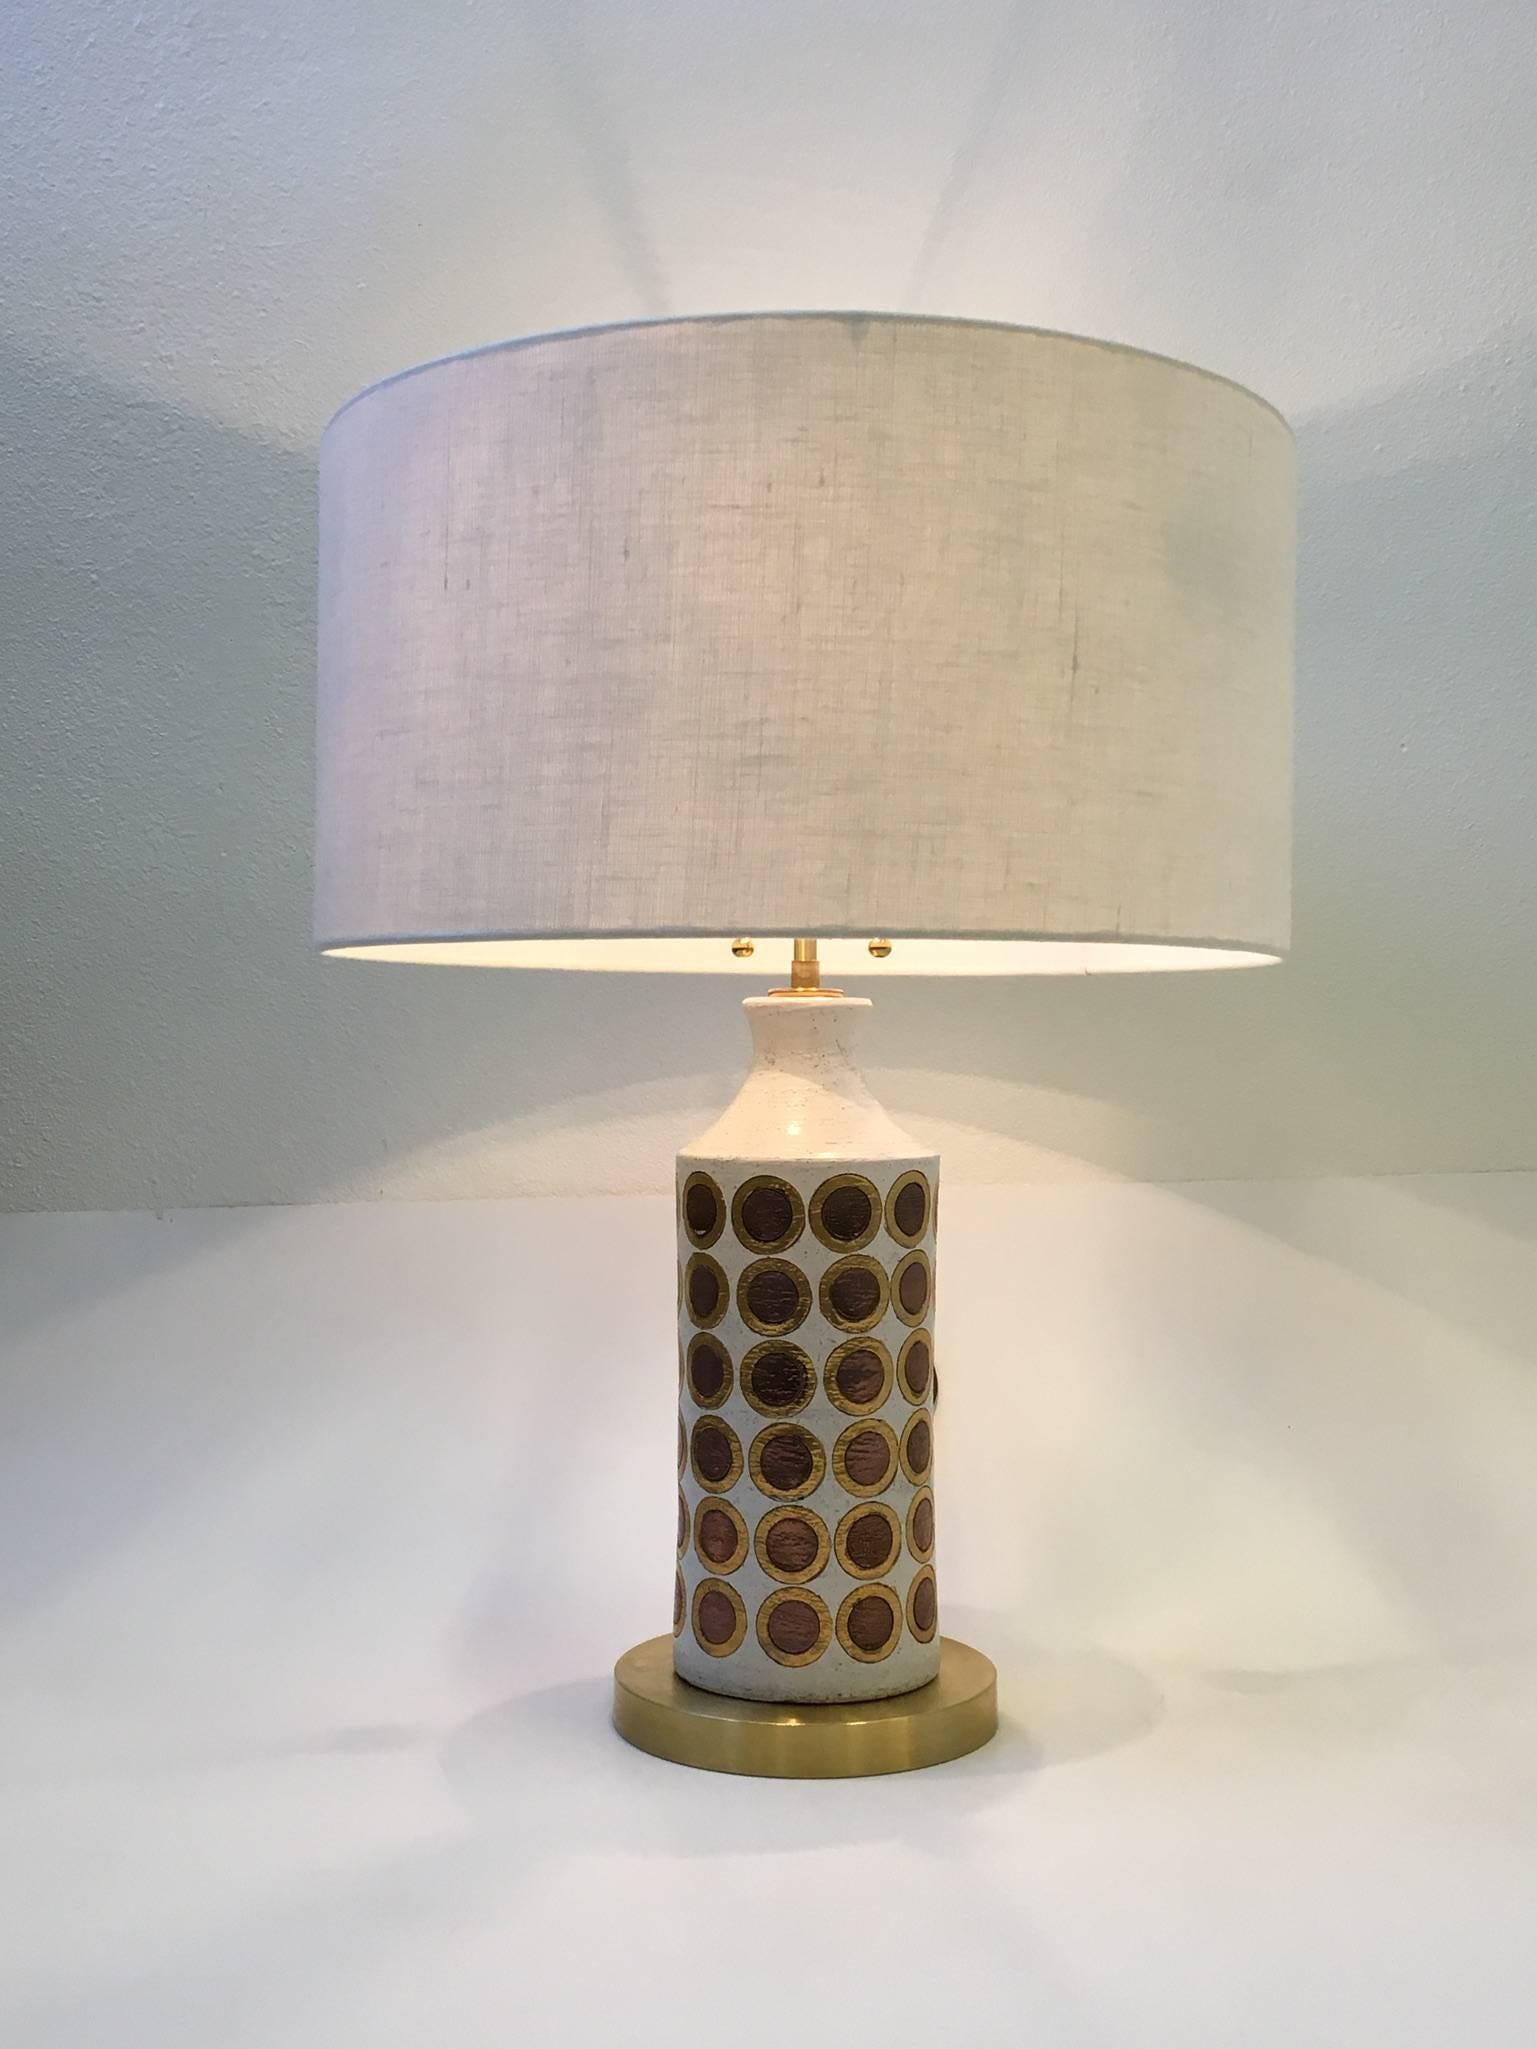 Une rare lampe de table en céramique italienne des années 1960 par Bitossi. La lampe présente de beaux cercles émaillés en or et en cuivre sur un fond blanc. Nouvellement reconnecté avec tout nouveau matériel en laiton, cordon en tissu brun et